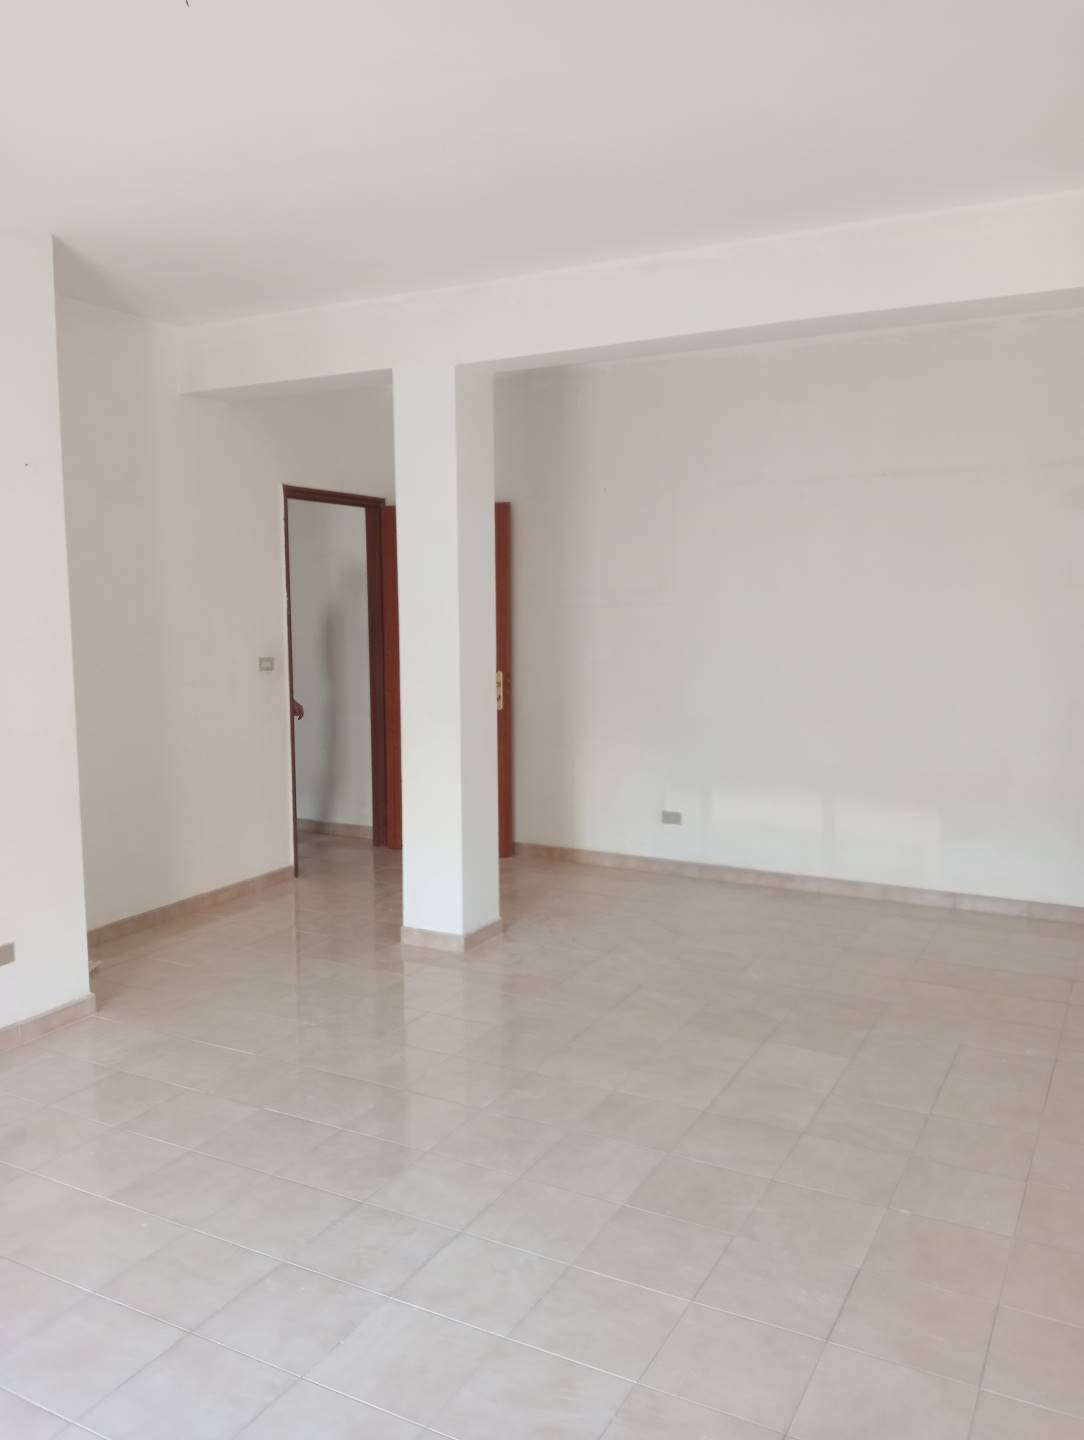 Appartamento in vendita a Licata, 3 locali, zona Località: VIA SALSO, prezzo € 52.000 | PortaleAgenzieImmobiliari.it